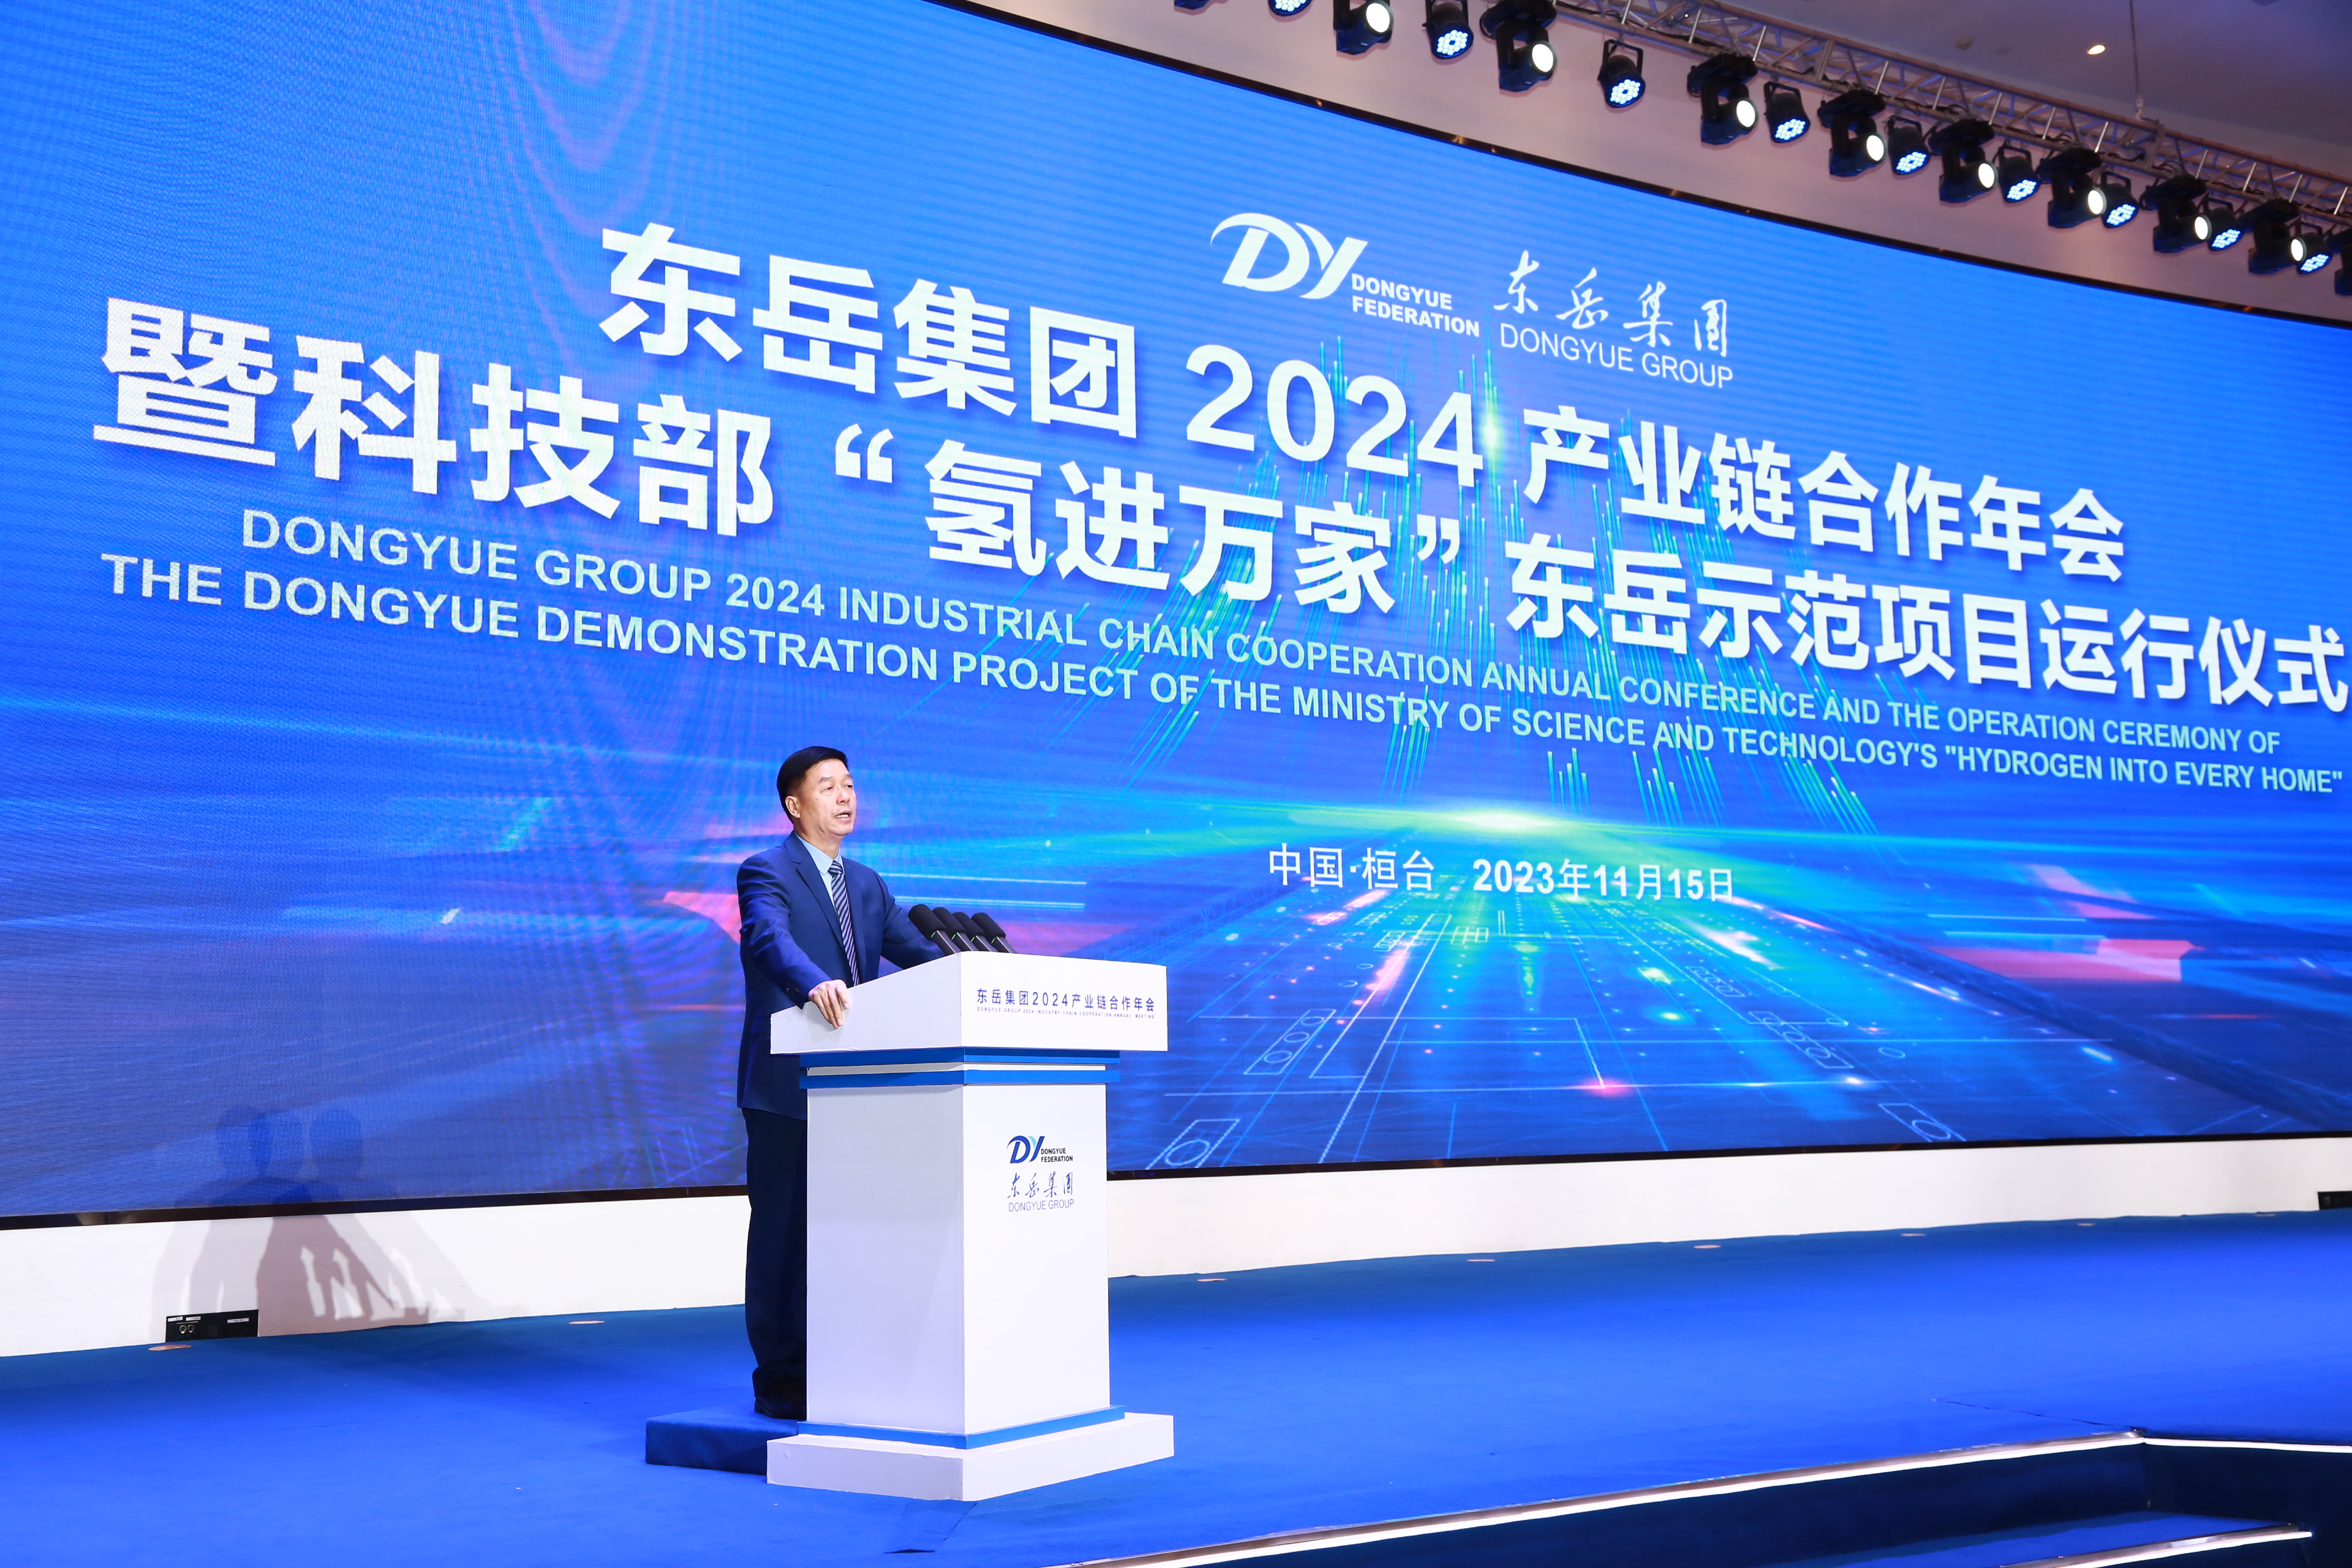 2024產業鏈合作年會推出累累科技碩果 東岳集團“氫進萬家”示范項目正式投運